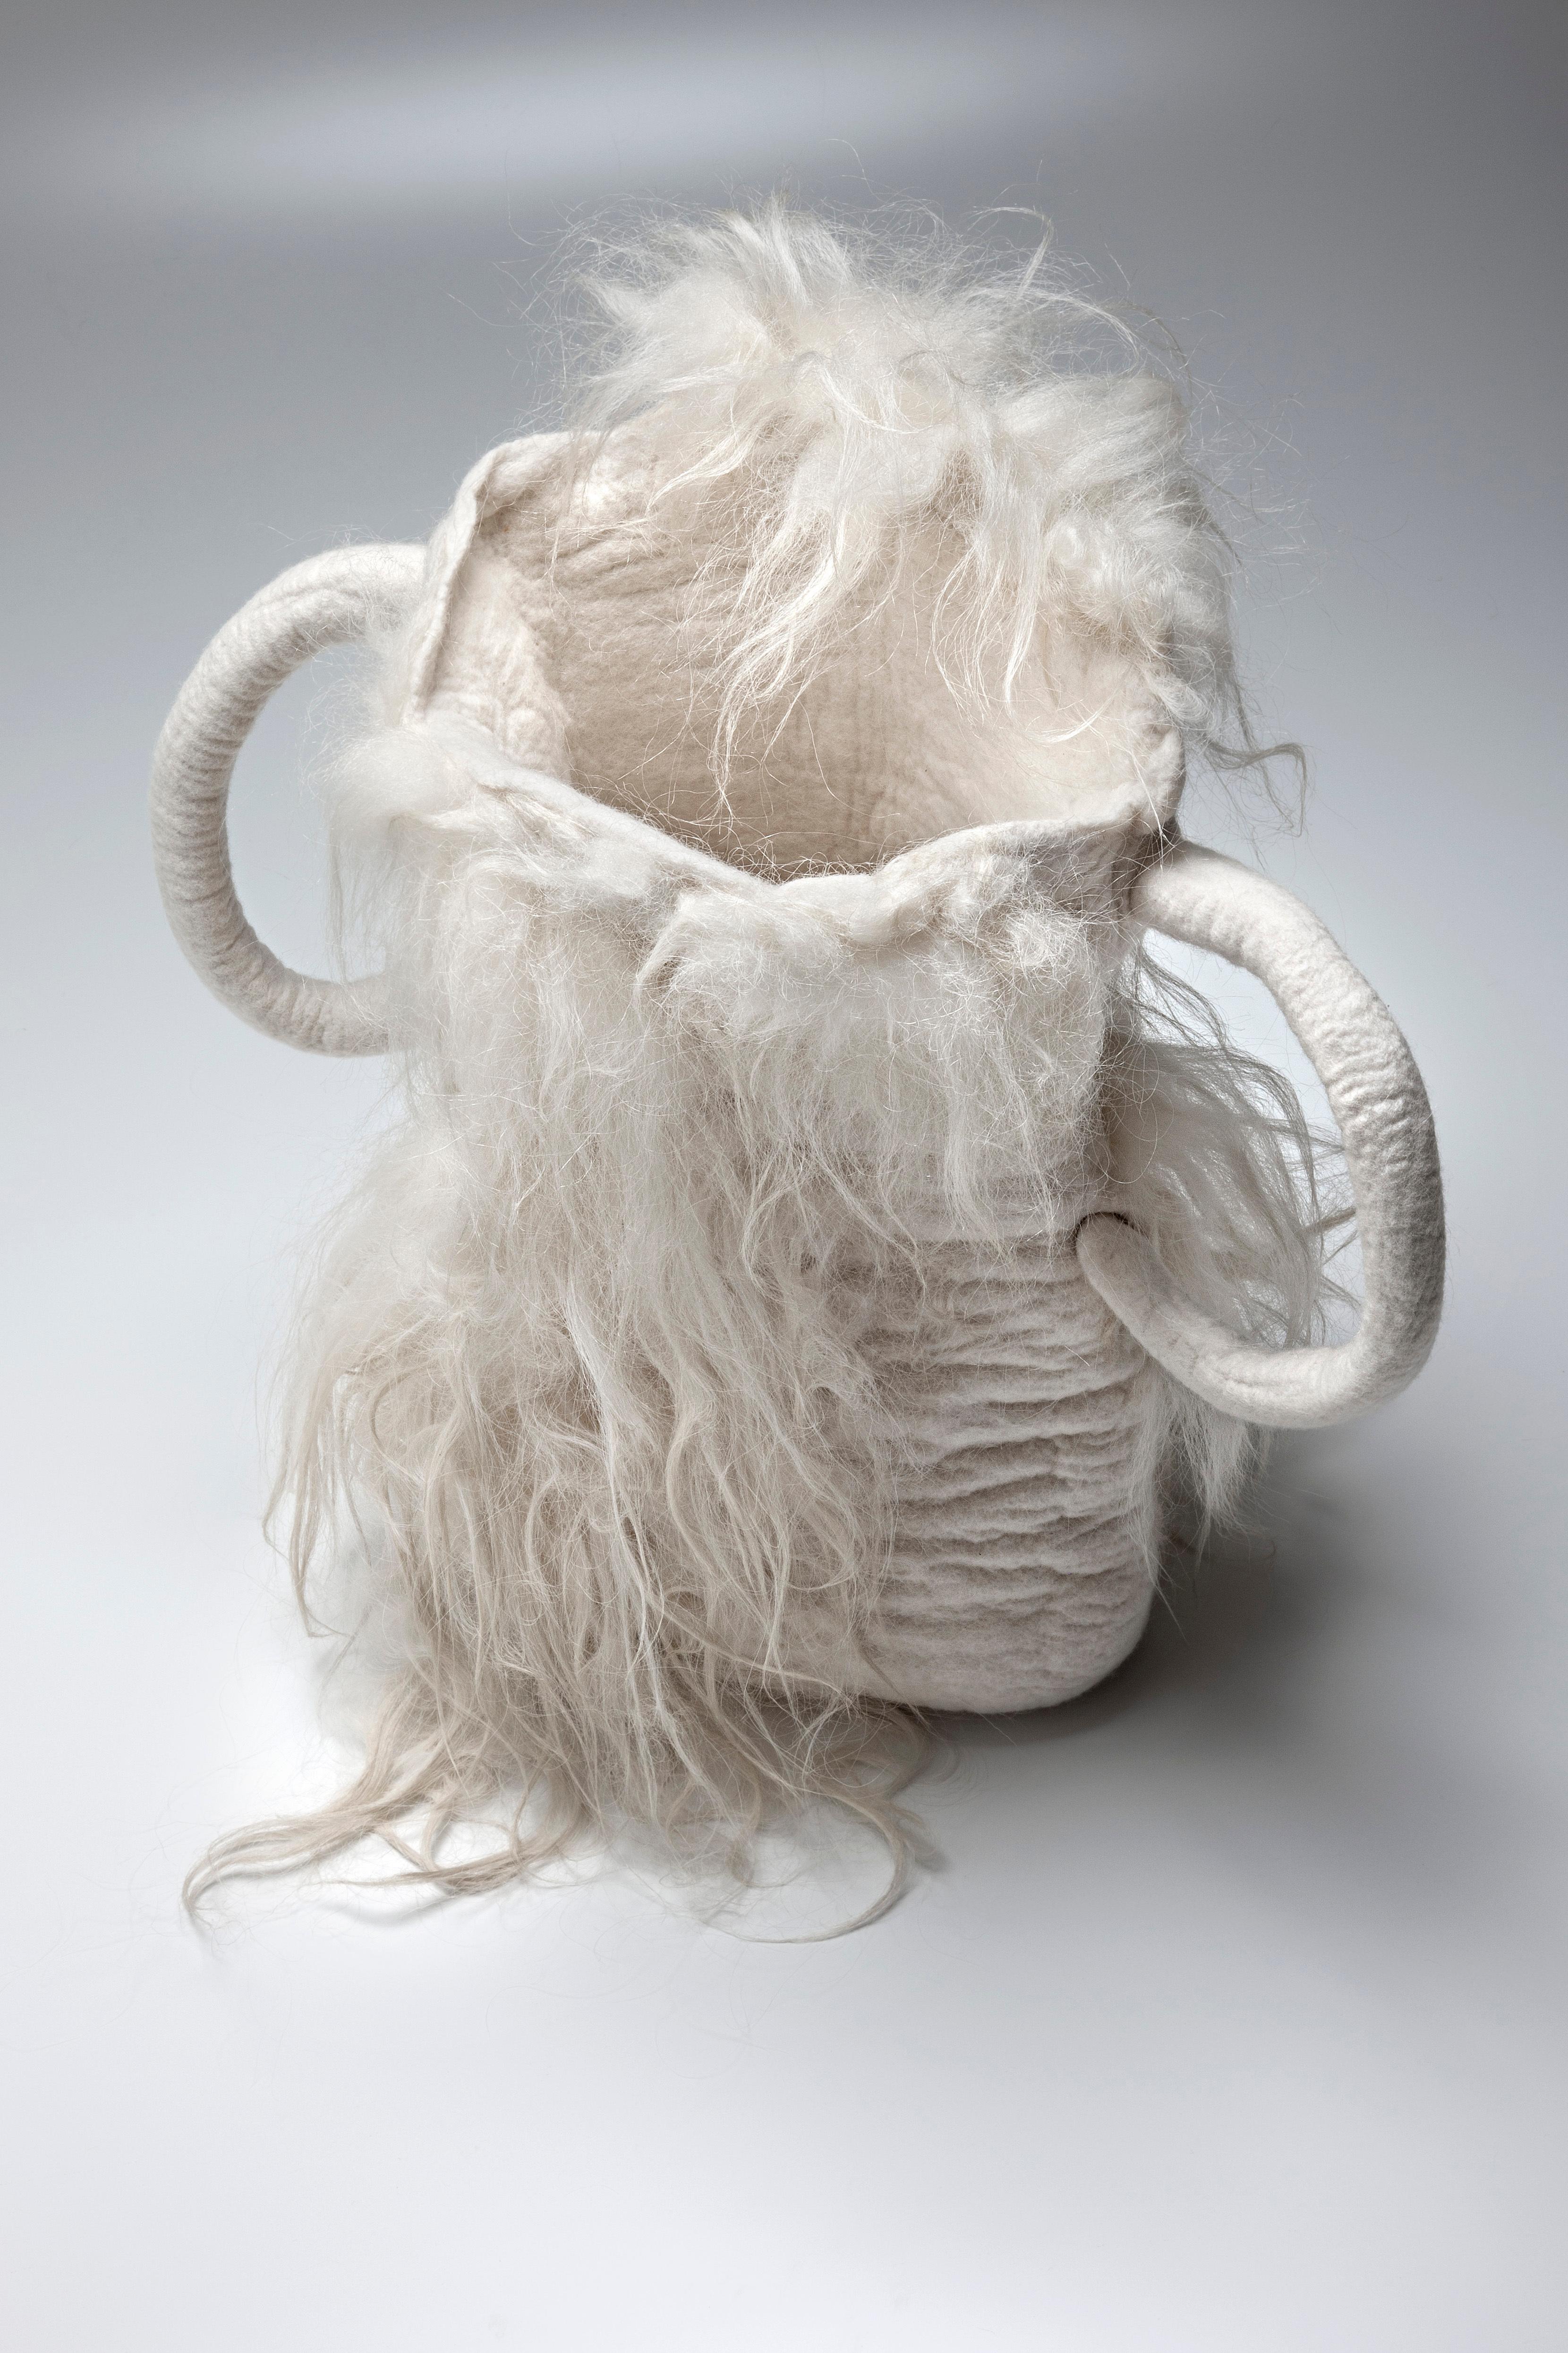 Poeira , 2021, natürlich gefärbte Vase aus gefilzter Wolle von Inês Schertel, Brasilien

Das wichtigste MATERIAL von Ines Schertel ist Schafwolle. Als Anhängerin des Slow Design verfolgt die Künstlerin einen ganzheitlichen Ansatz bei der